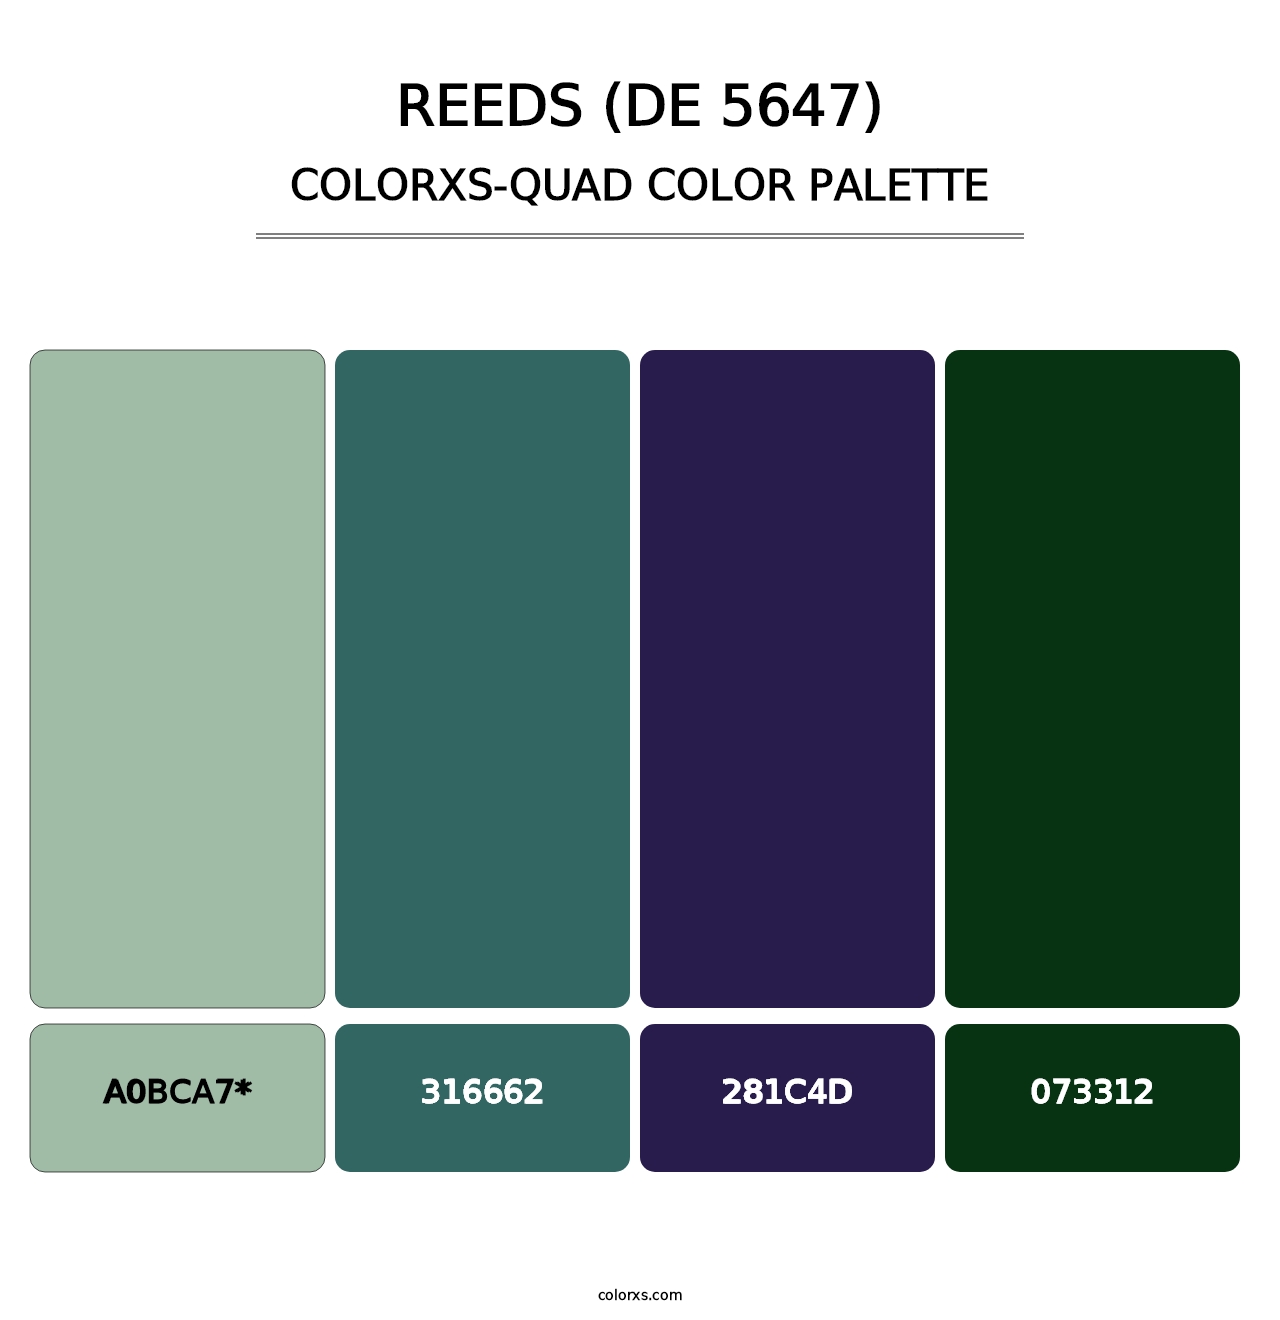 Reeds (DE 5647) - Colorxs Quad Palette